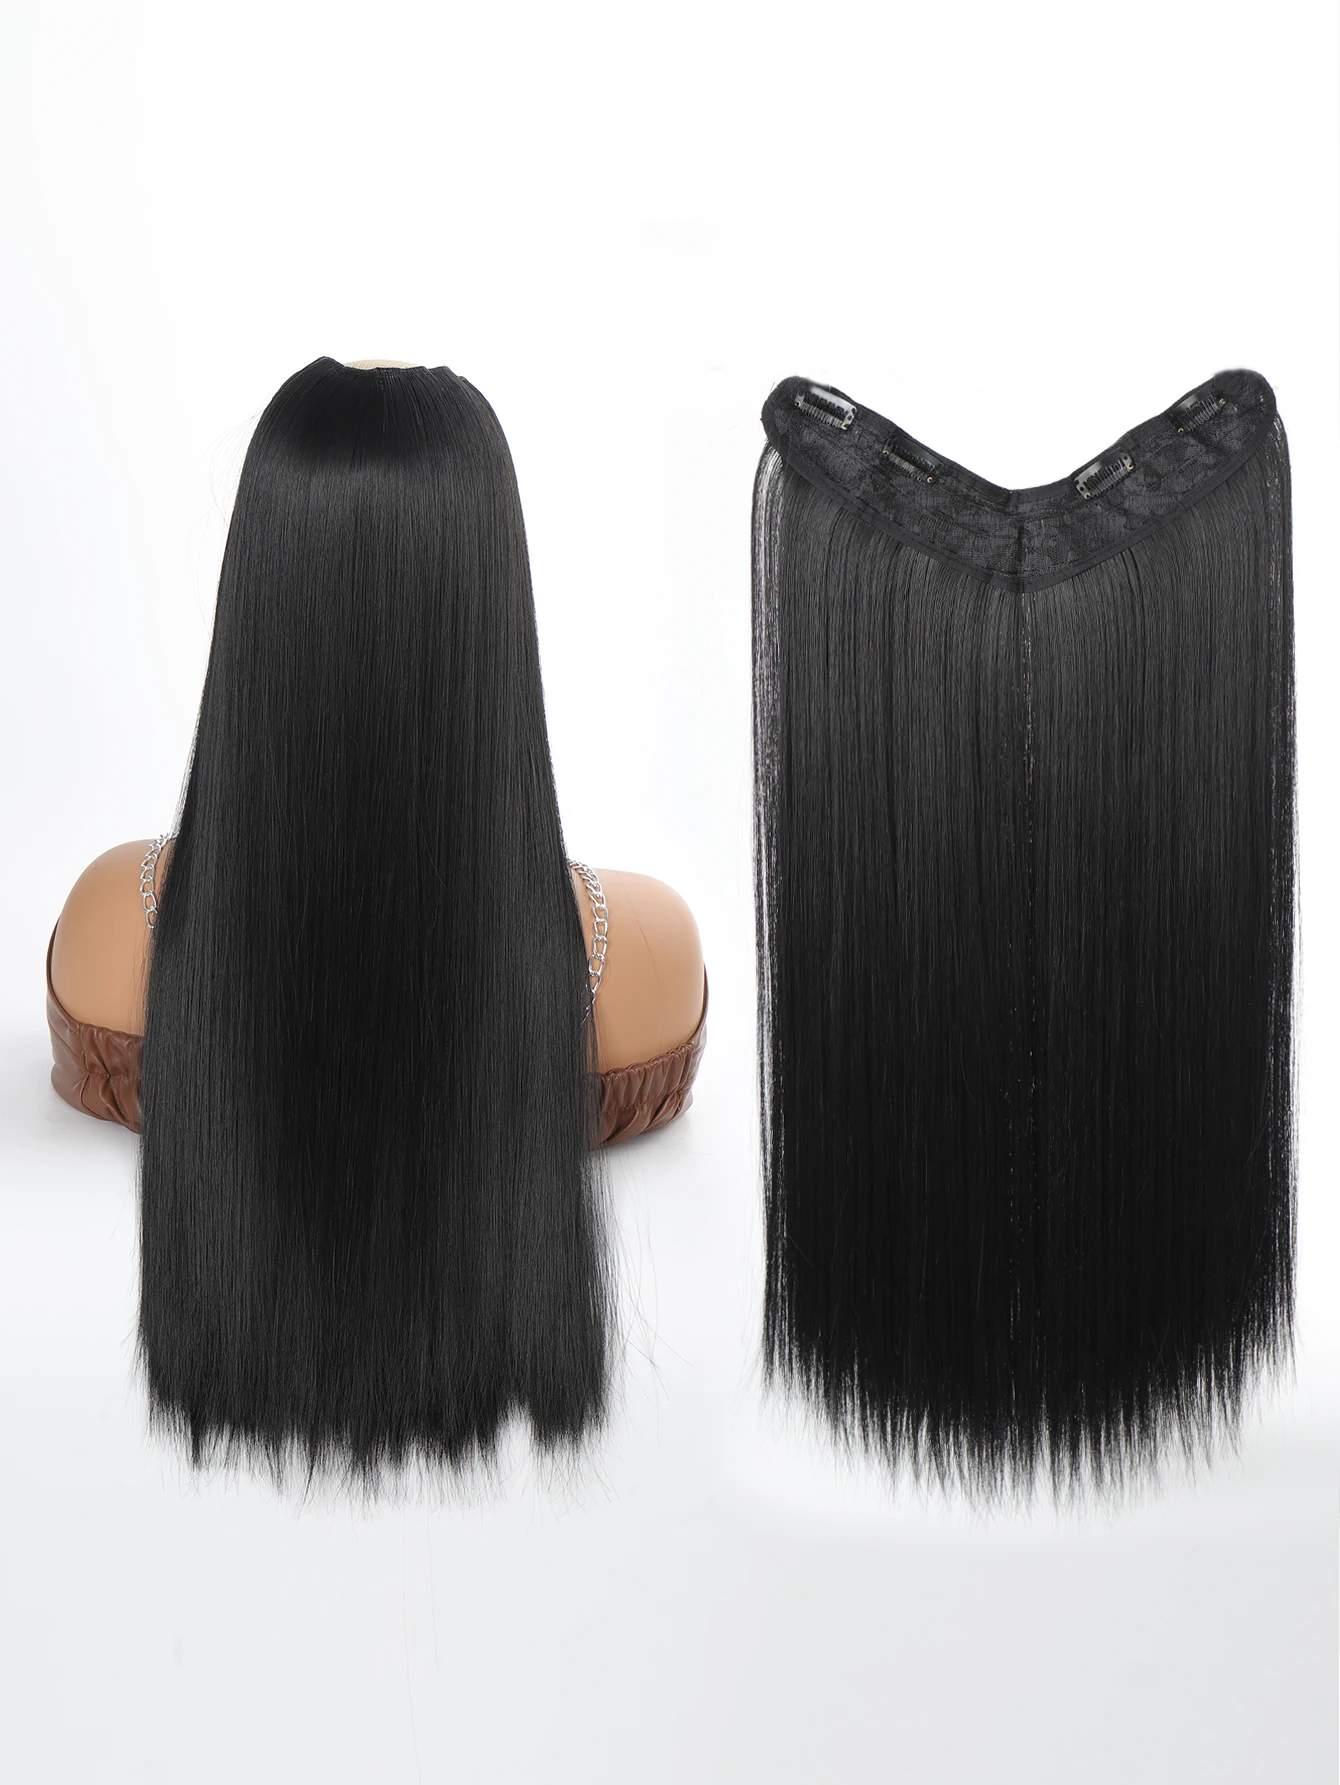 סינתטי ארוך ישר בצורת V הארכת שיער הפאה 24 אינץ ' שחור טבעי, חום 4 קליפ בחתיכה אחת